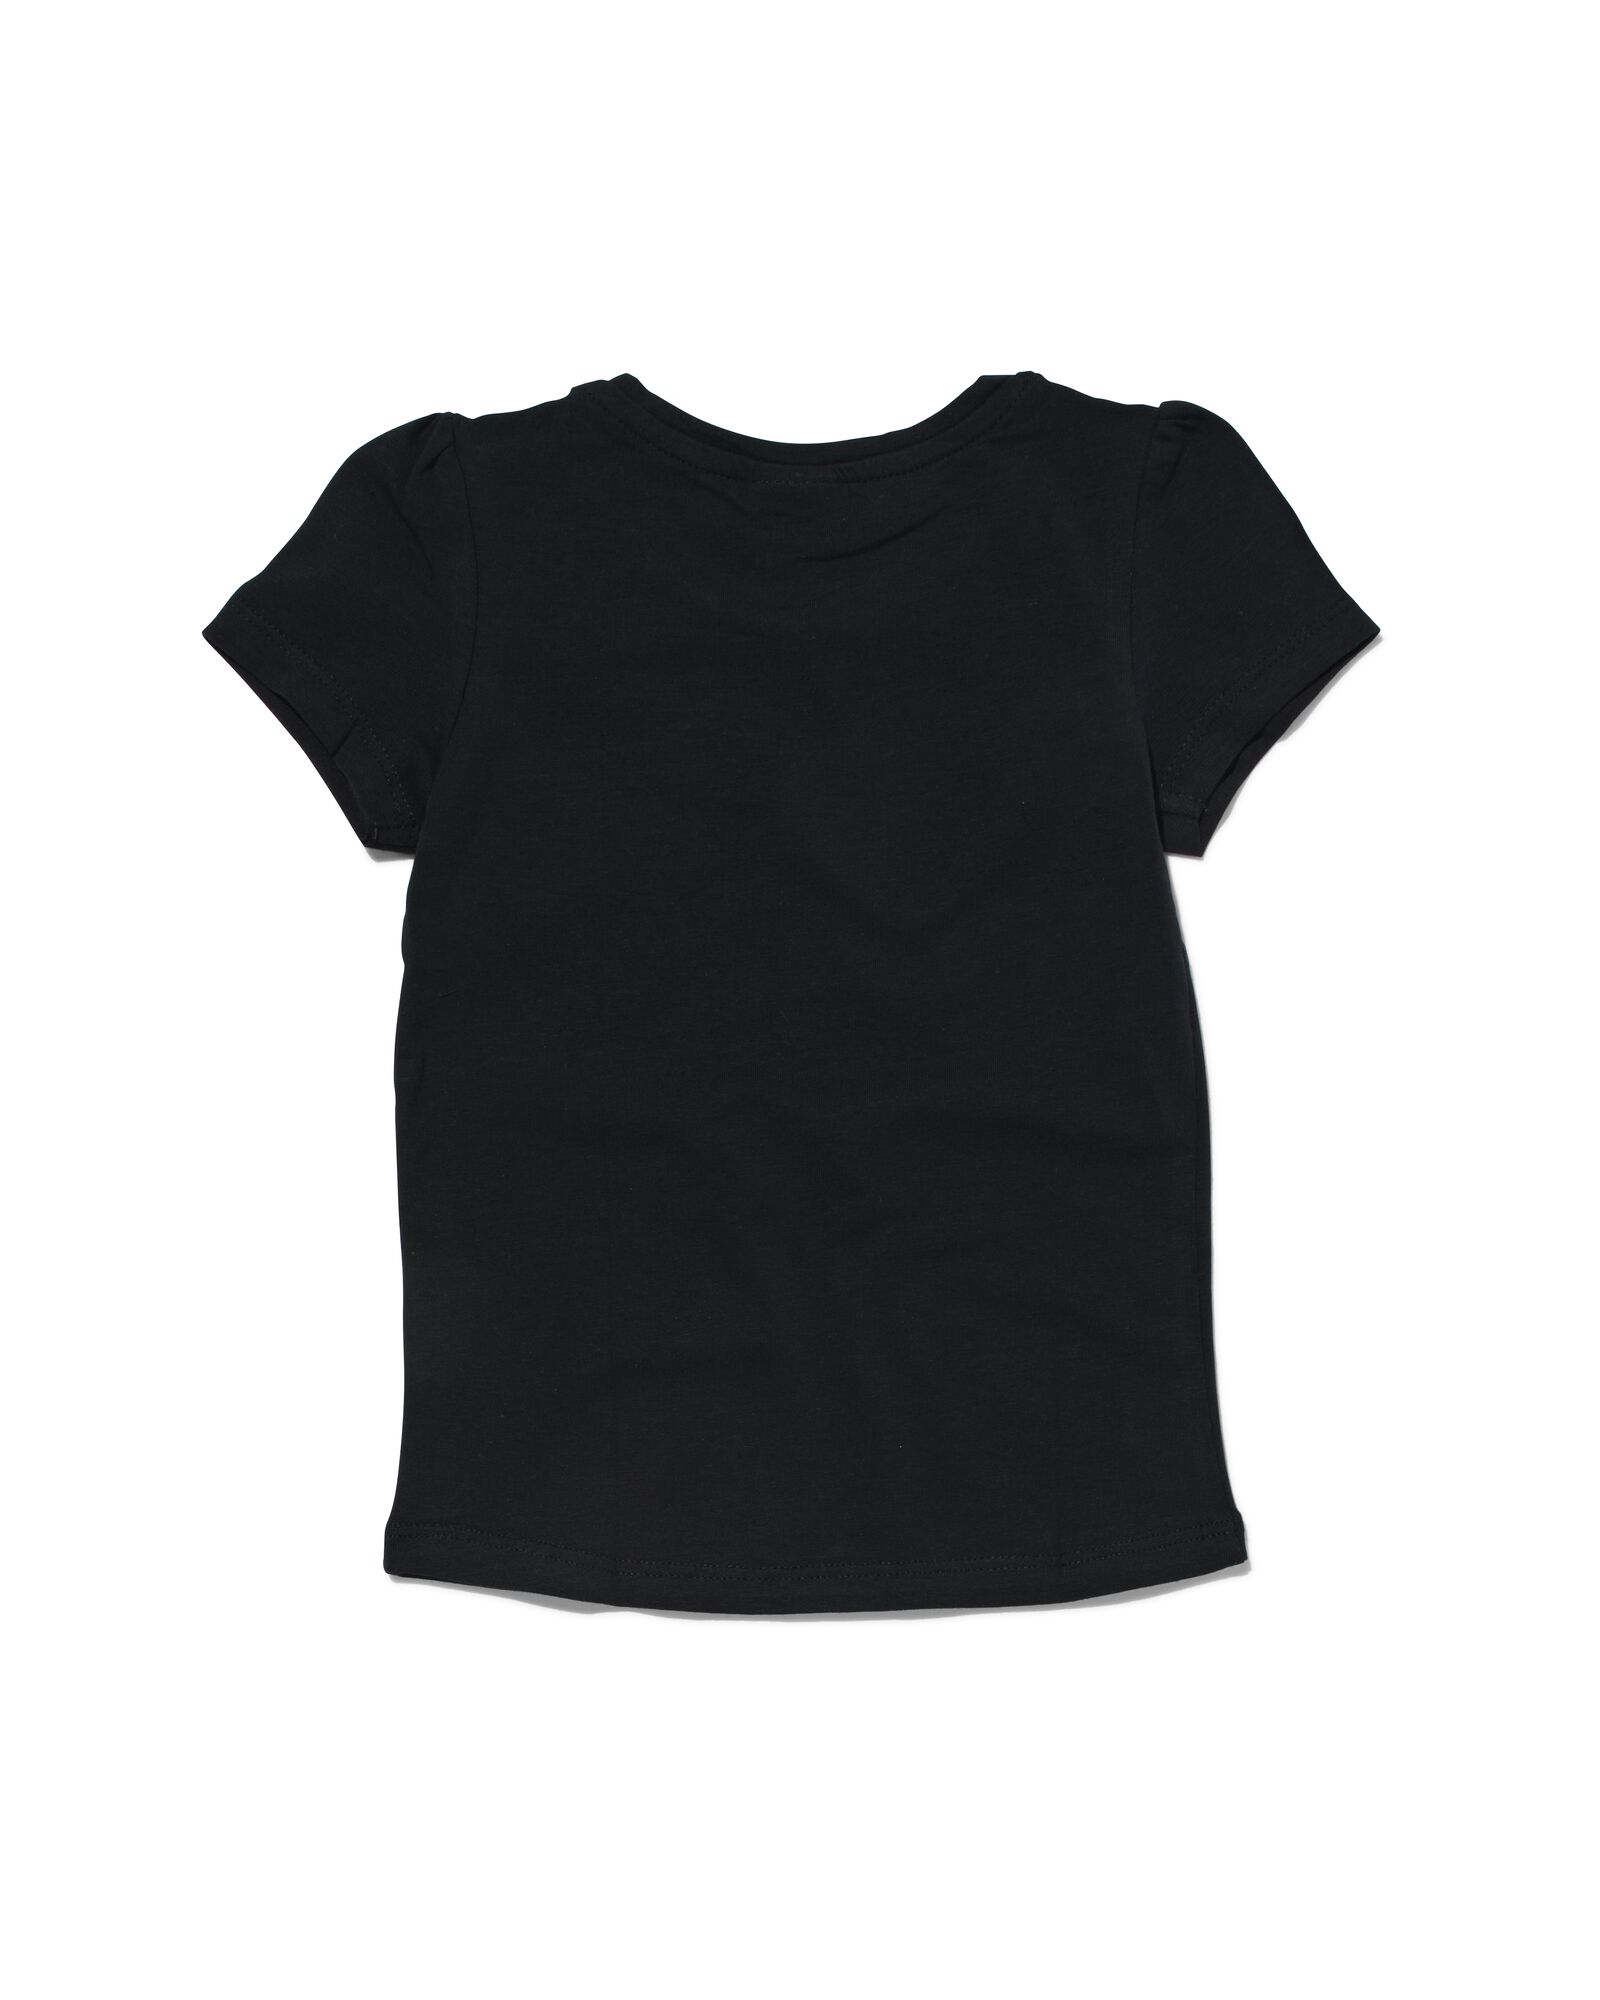 kinder t-shirt zwart 110/116 - 30843952 - HEMA